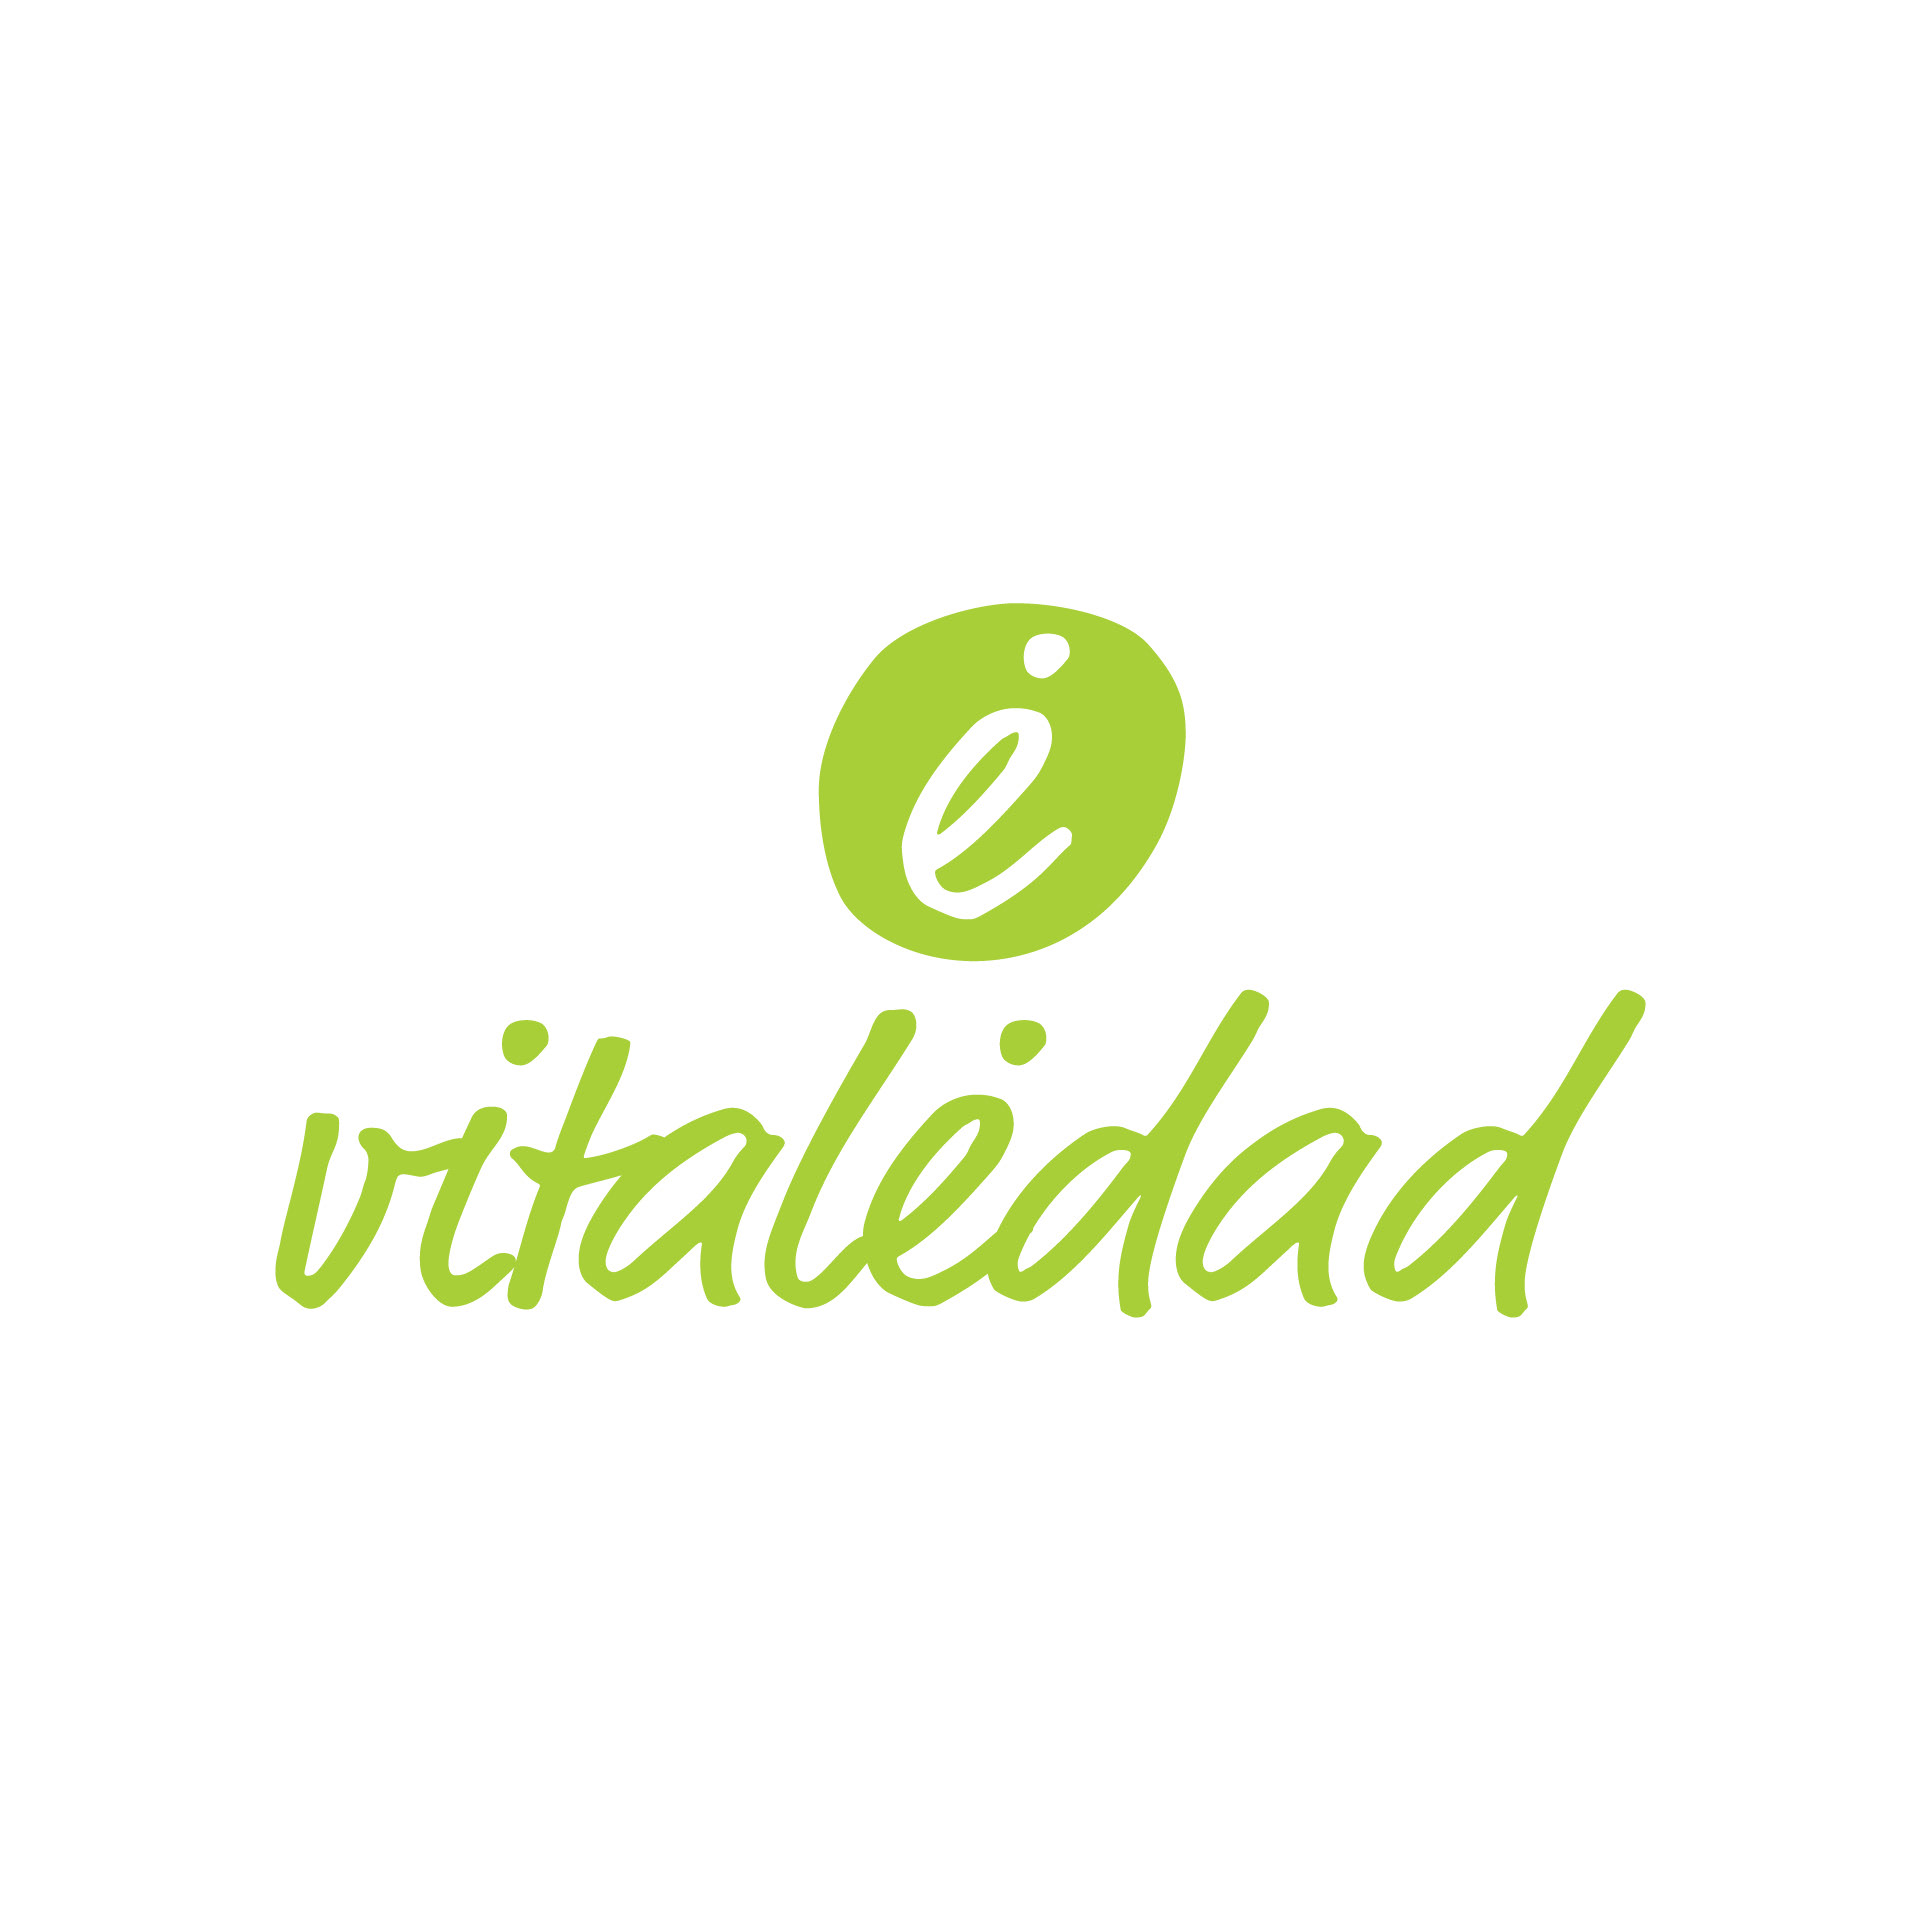 Logotipo para marca de productos antiedad Vitaledad